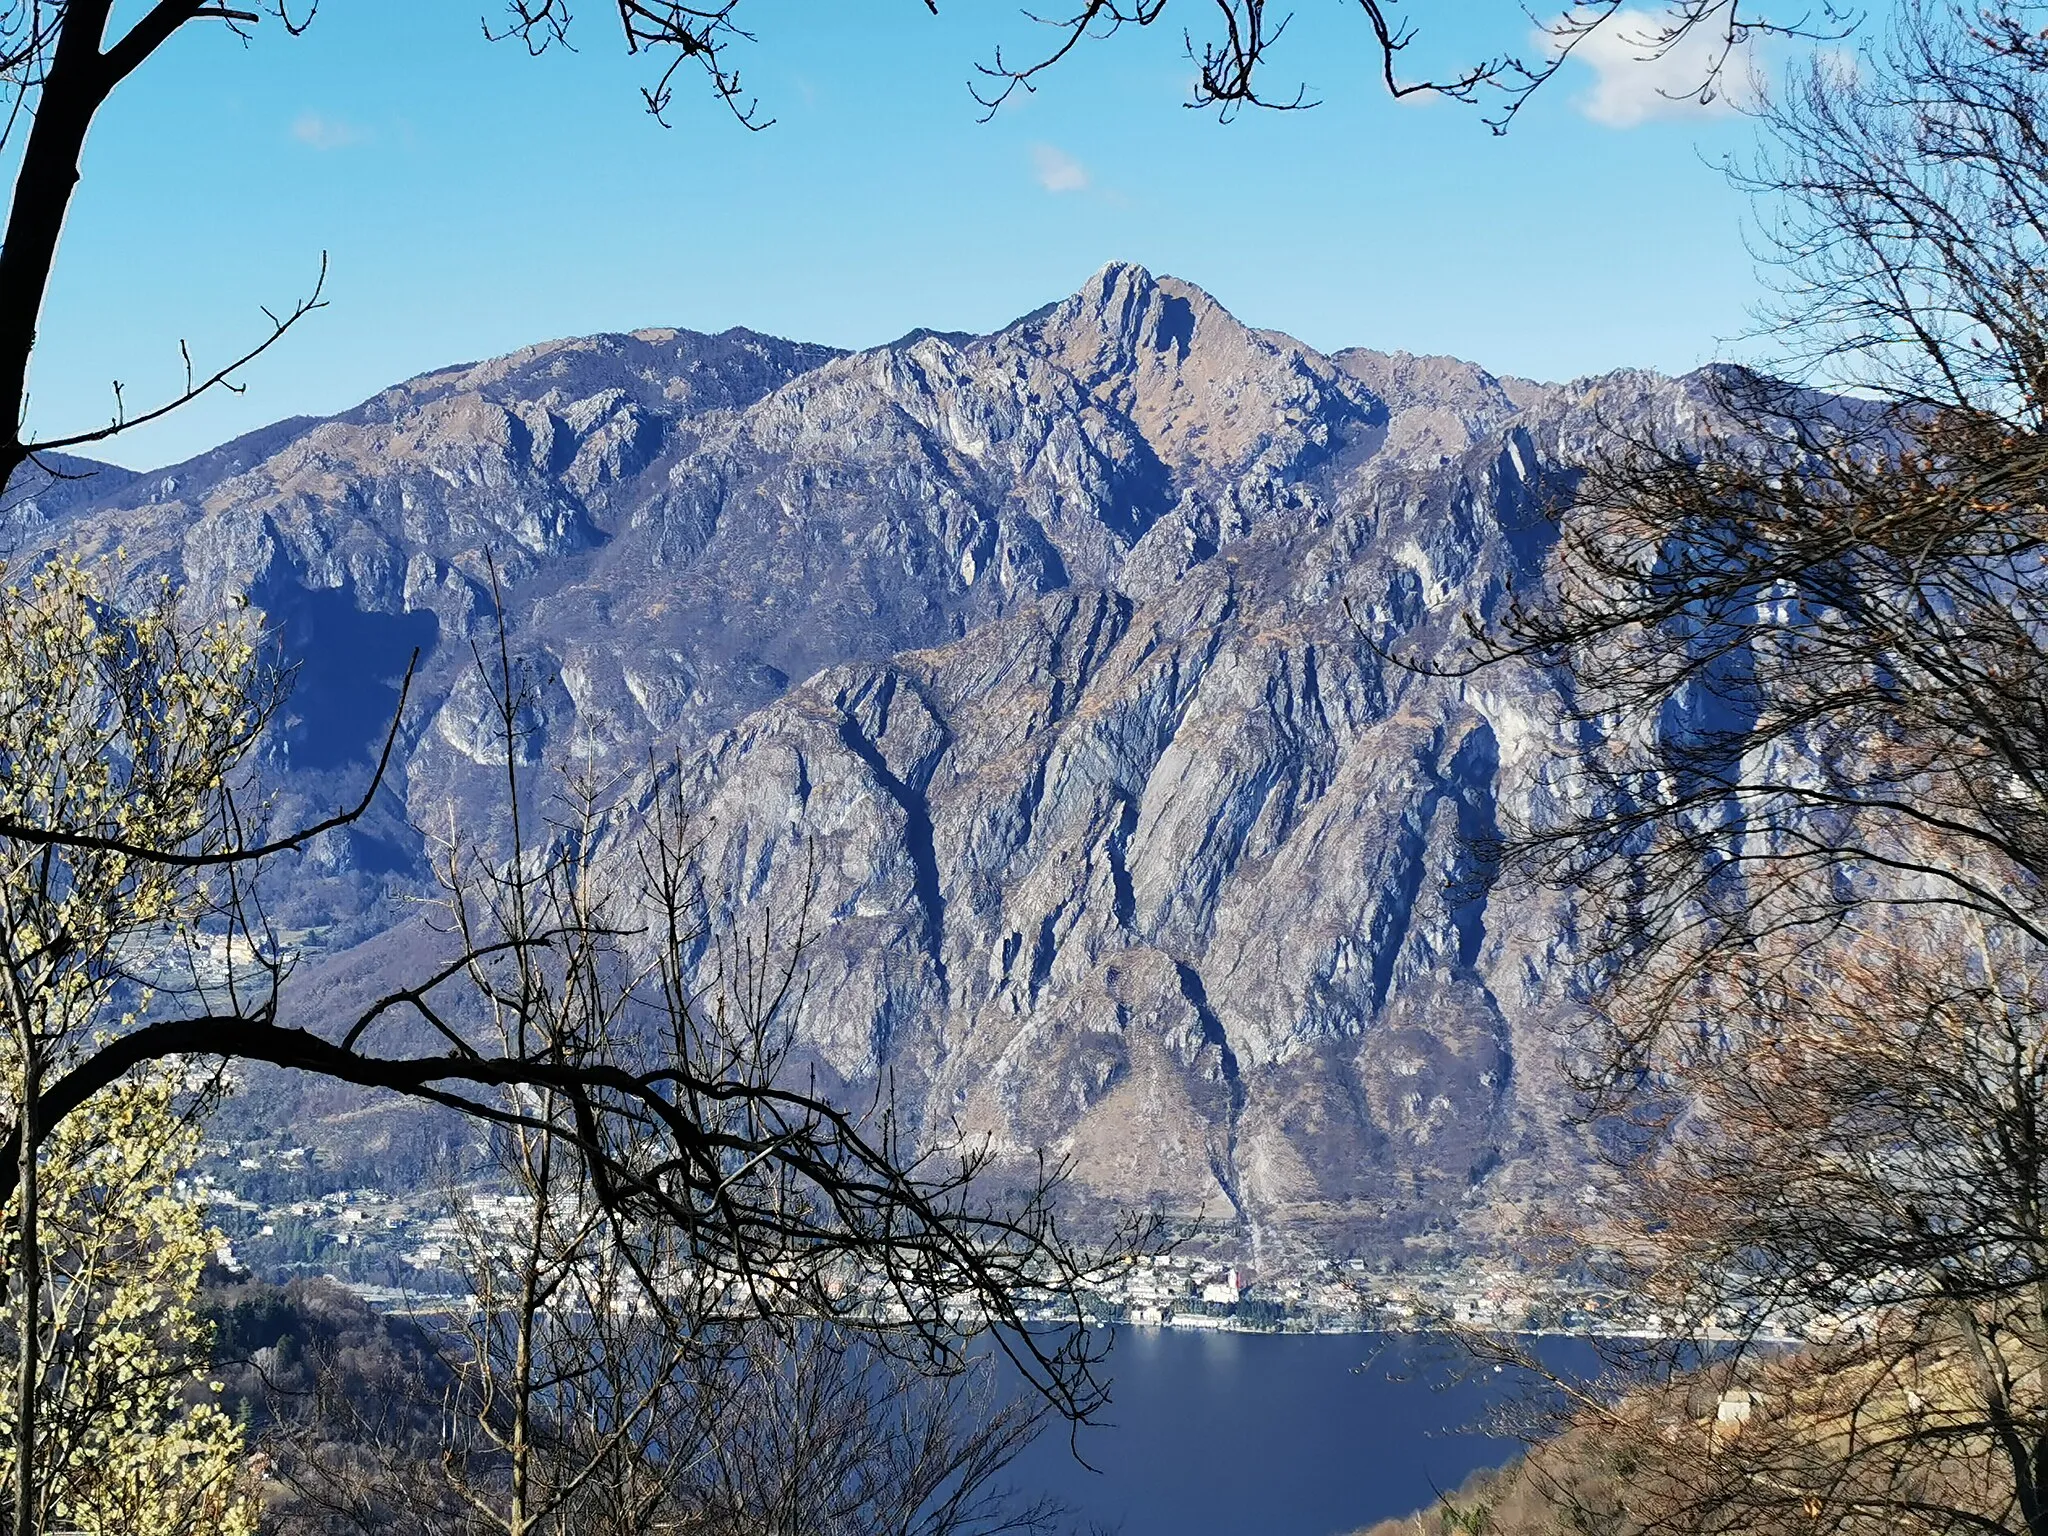 Photo showing: Panorama in direzione nord sul lago di Lugano, ripreso da un'area pic-nic lungo la Strada del Ross, nel comune di Laino. Al centro della foto, la vetta più alta è la Cima di Fiorina (o Cima di Fojorina, come la chiamano gli svizzeri), lungo il confine italo-svizzero. A sinistra della Cima di Fojorina, su un piano più vicino, il Monte Pradè. A destra della Cima di Fojorina, in primo piano, la cima ovest del Monte dei Pizzoni (quella est è coperta dai rami degli alberi).